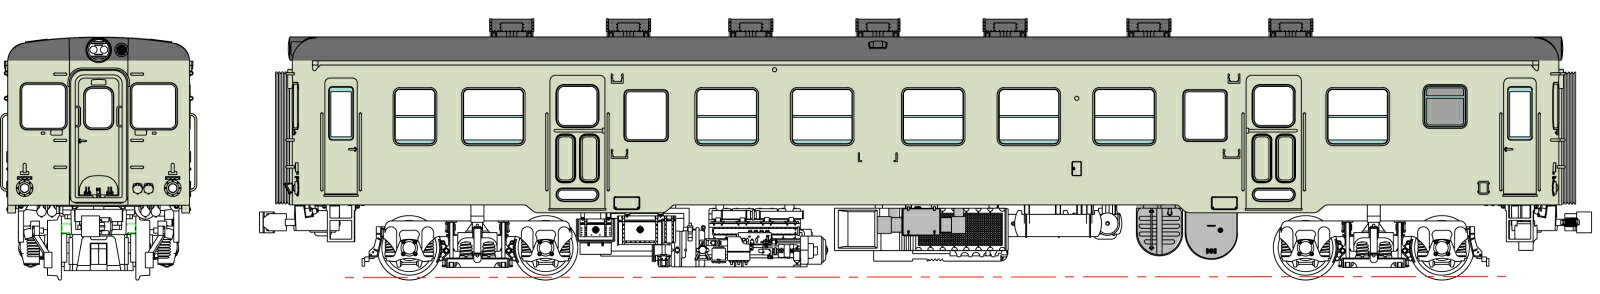 キハ20-200代(二段上昇窓)クリーム10号、動力なし 【TW-K20-200ET】 (鉄道模型 HOゲージ)